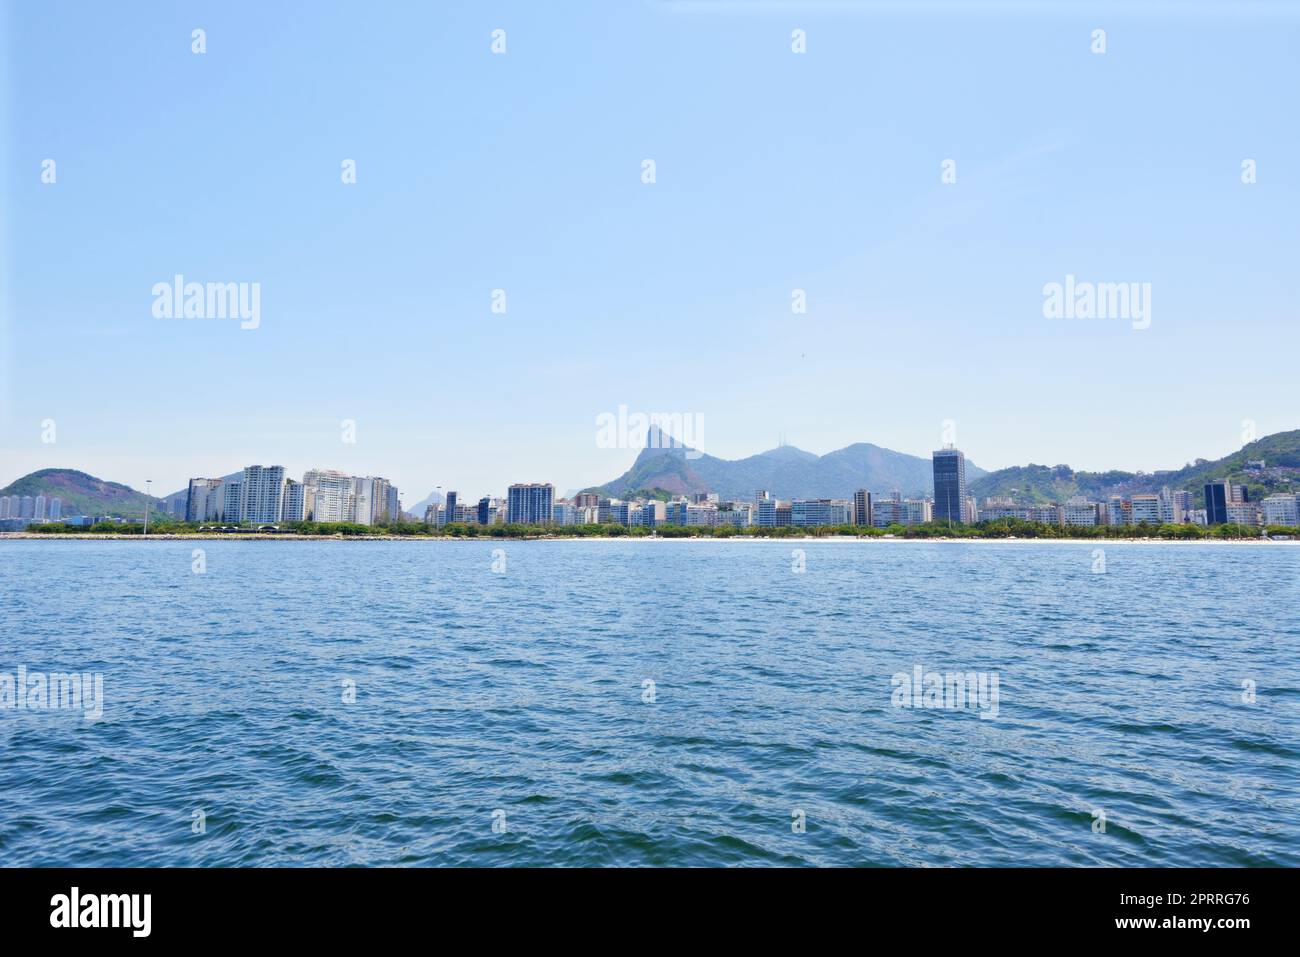 Reiseziel Karnevalsstadt. Panoramaaufnahme der Stadt Rio de Janeiro aus der Ferne. Stockfoto